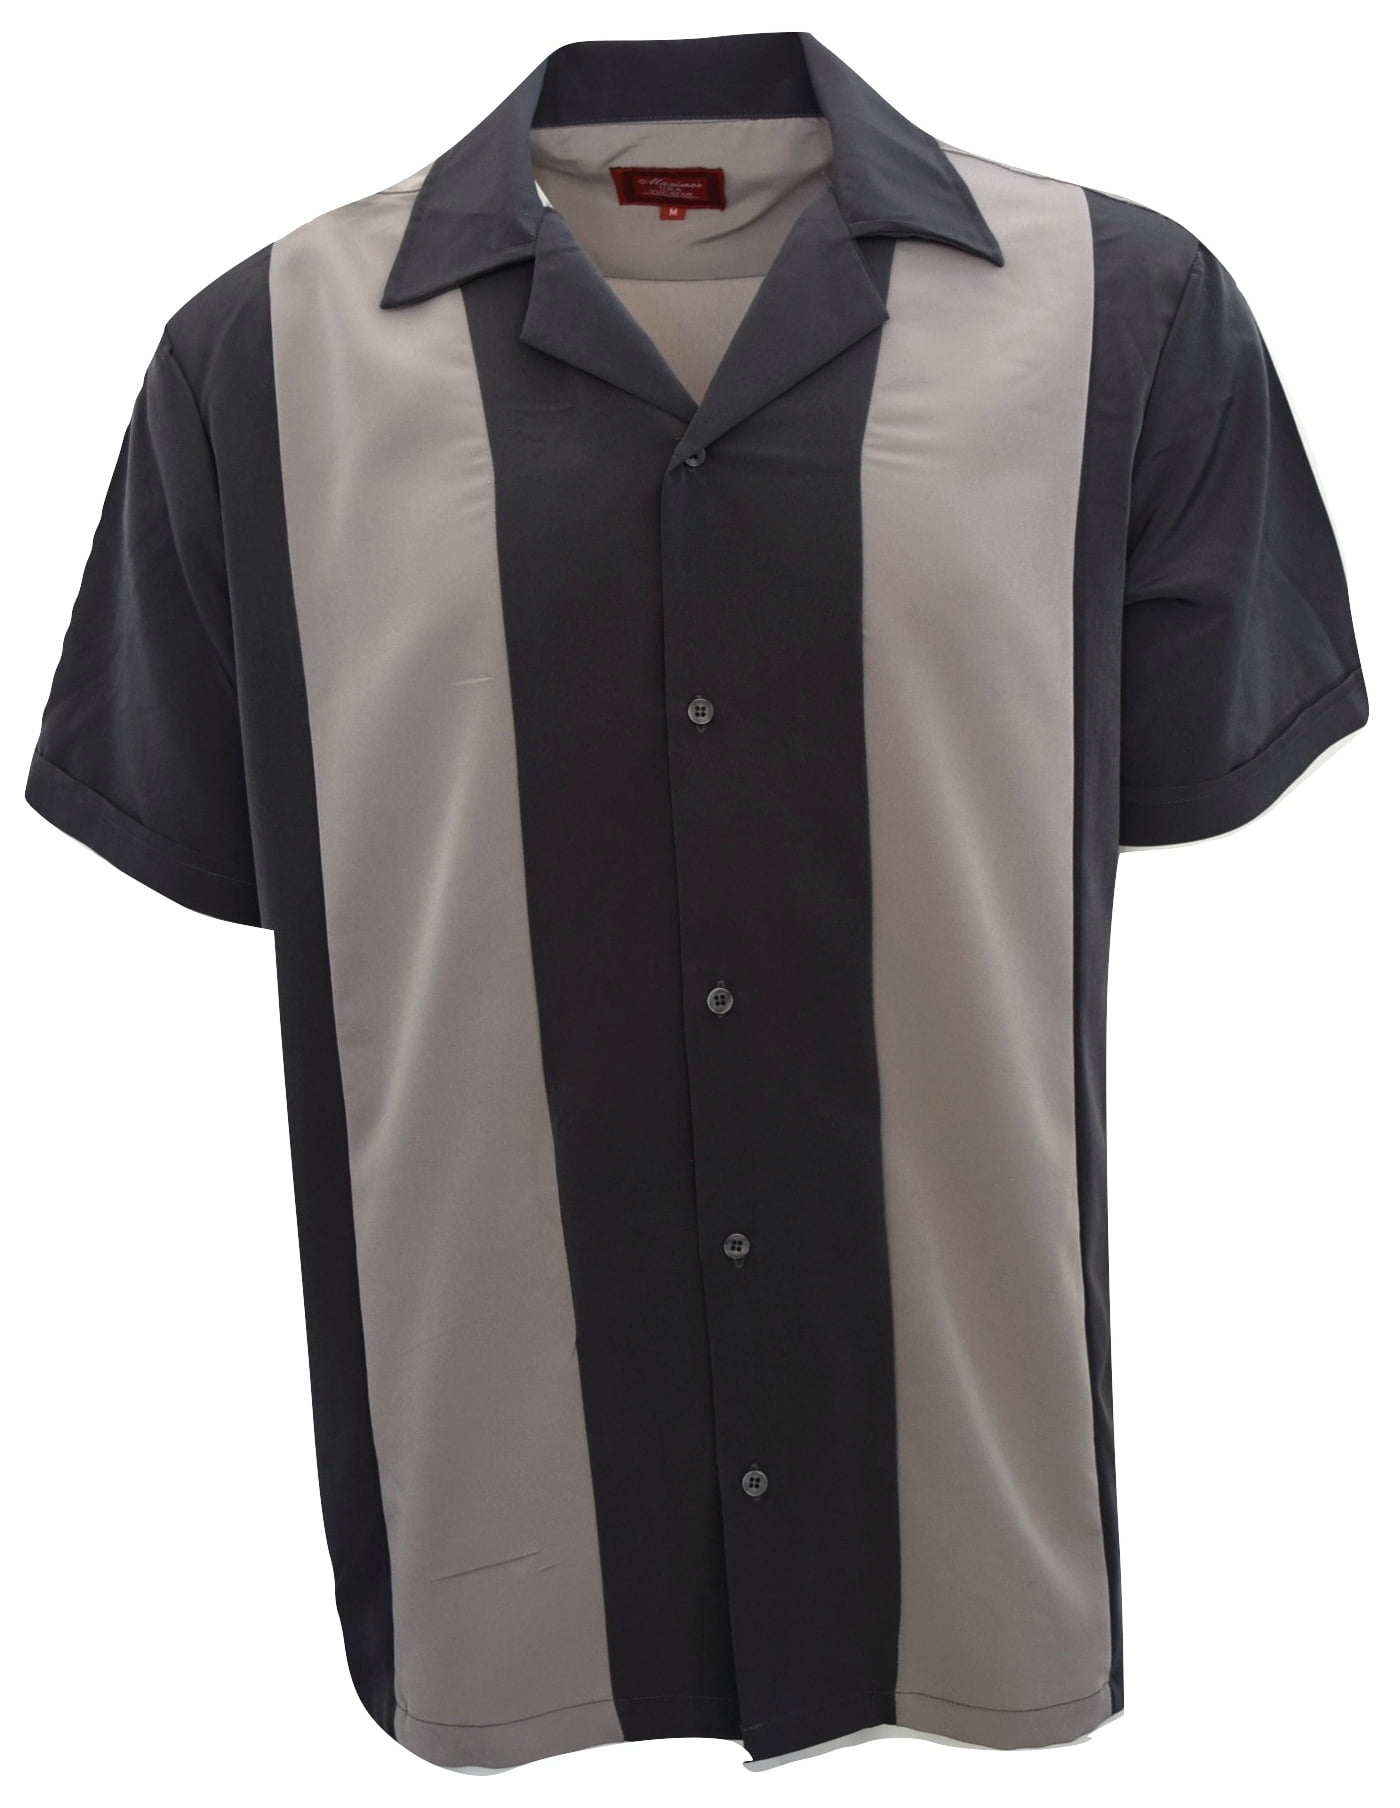 Men's Shirt Two Tone Short Sleeve Button Down Casual Retro Bowling